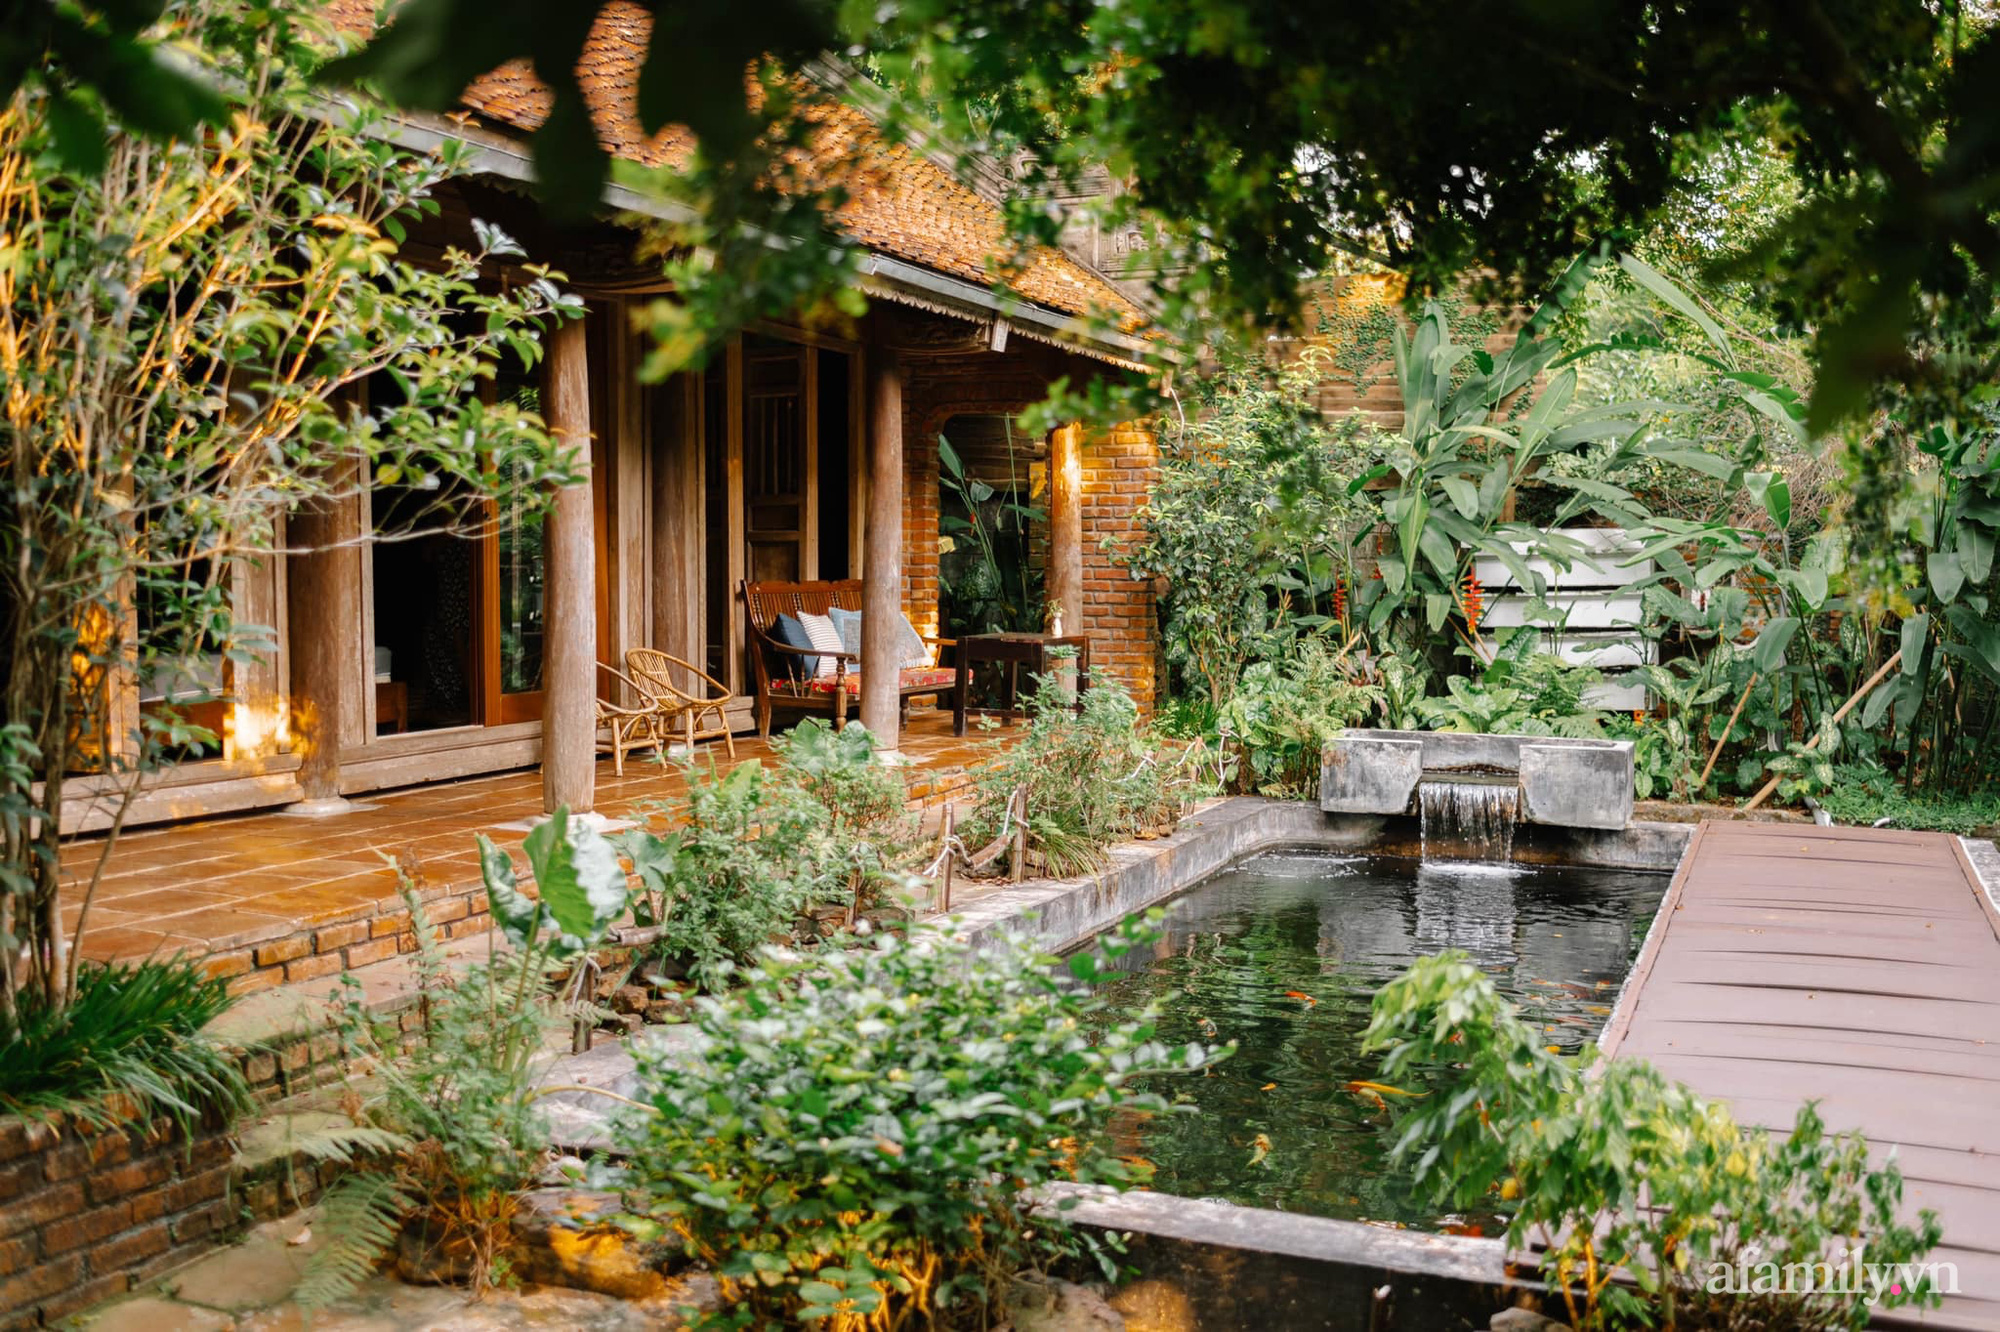 Hãy cùng khám phá ngôi nhà nhỏ xinh đẹp với khu vườn xanh rực rỡ màu sắc. Đây là một điểm đến lý tưởng cho những ai yêu thiên nhiên và ước muốn có một không gian sống gần gũi với thiên nhiên. Hình ảnh sẽ đem đến cho bạn cảm giác nhẹ nhàng và yên bình.